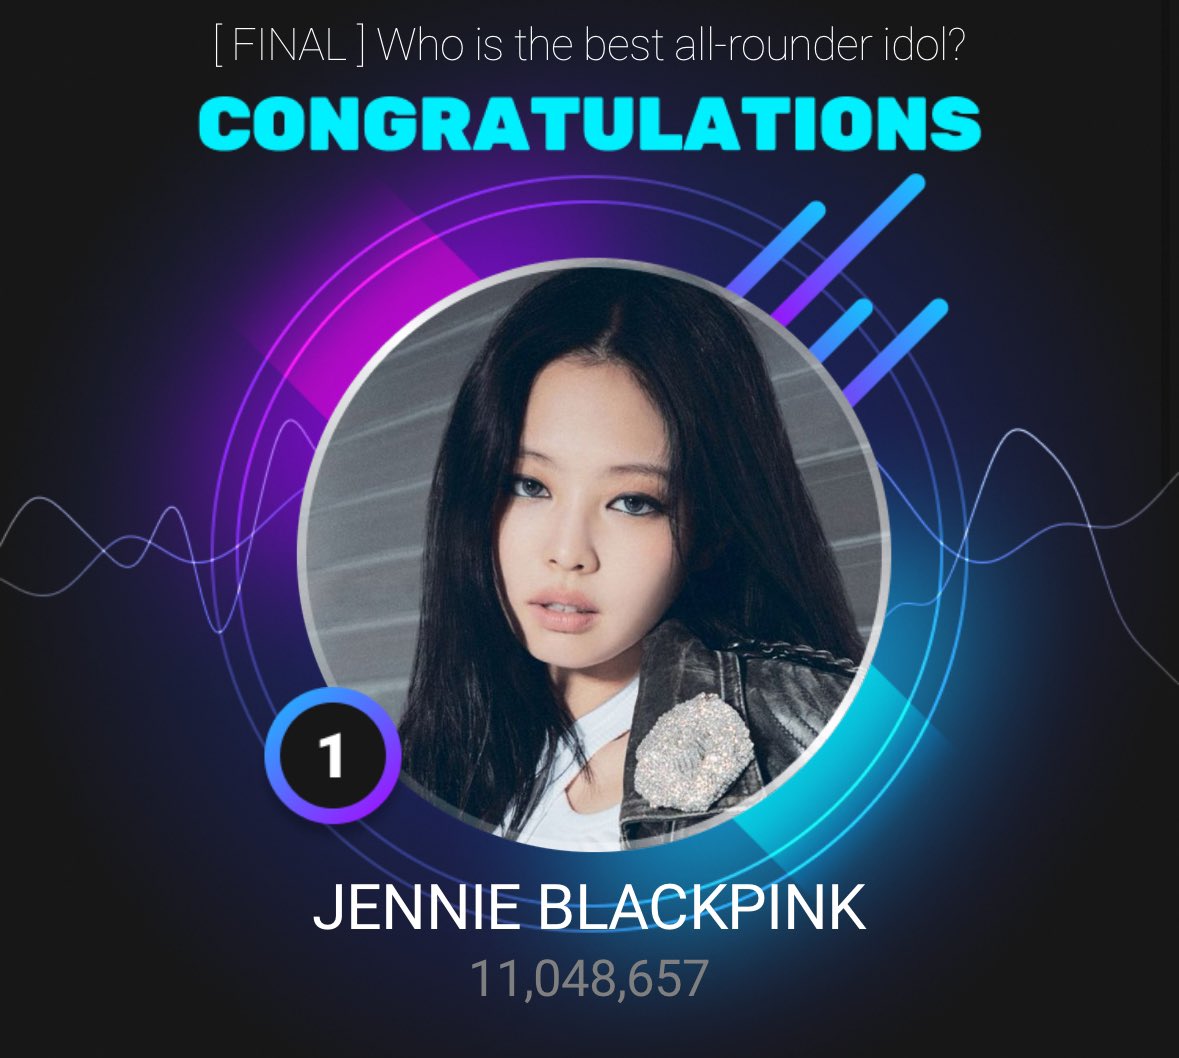 Jennie xuất sắc giành chiến thắng với con số bình chọn khủng là 11.048.657 phiếu bầu (Ảnh: Internet)